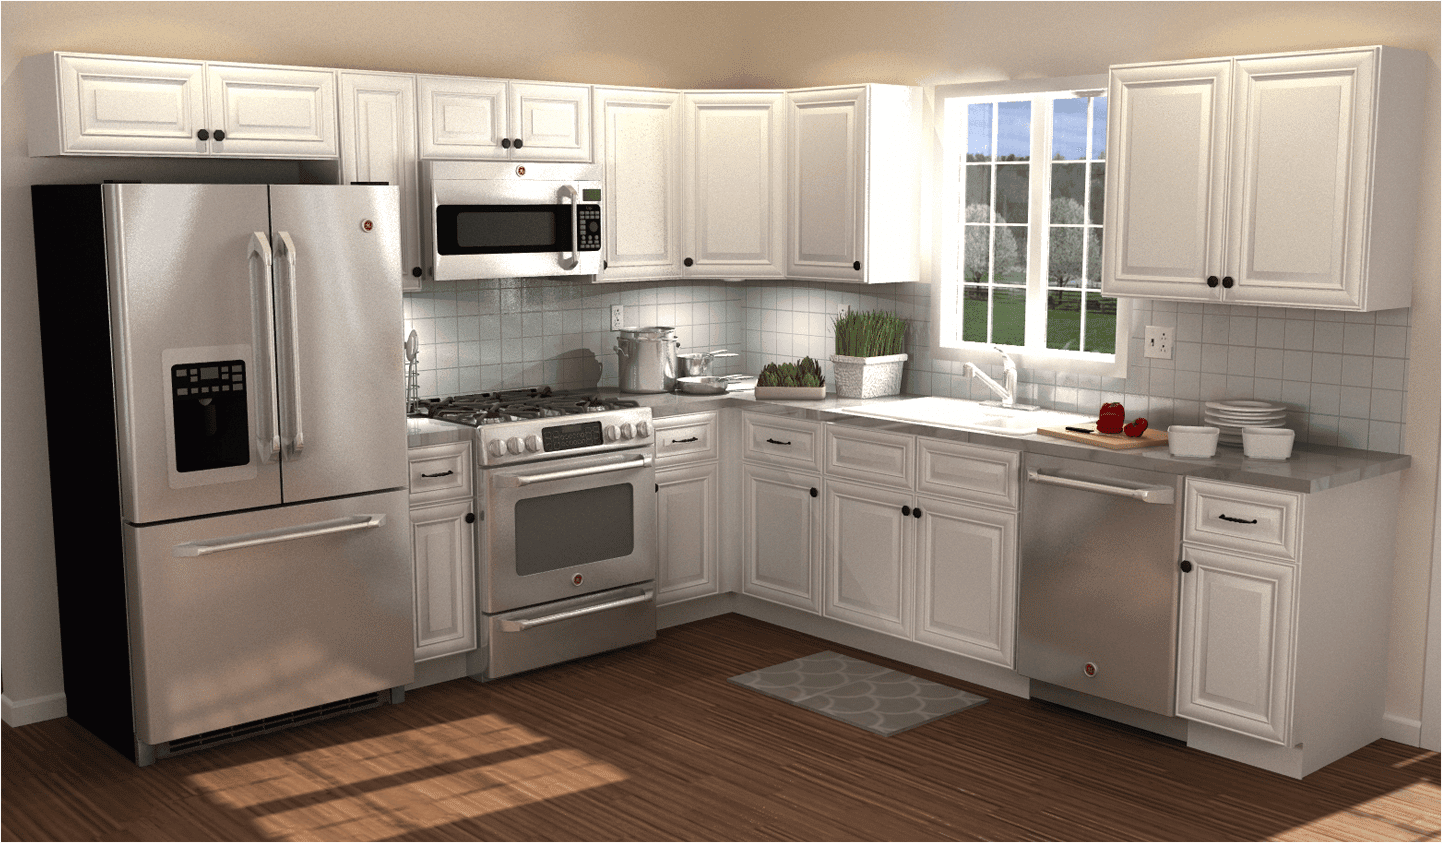 1.12 kitchen design